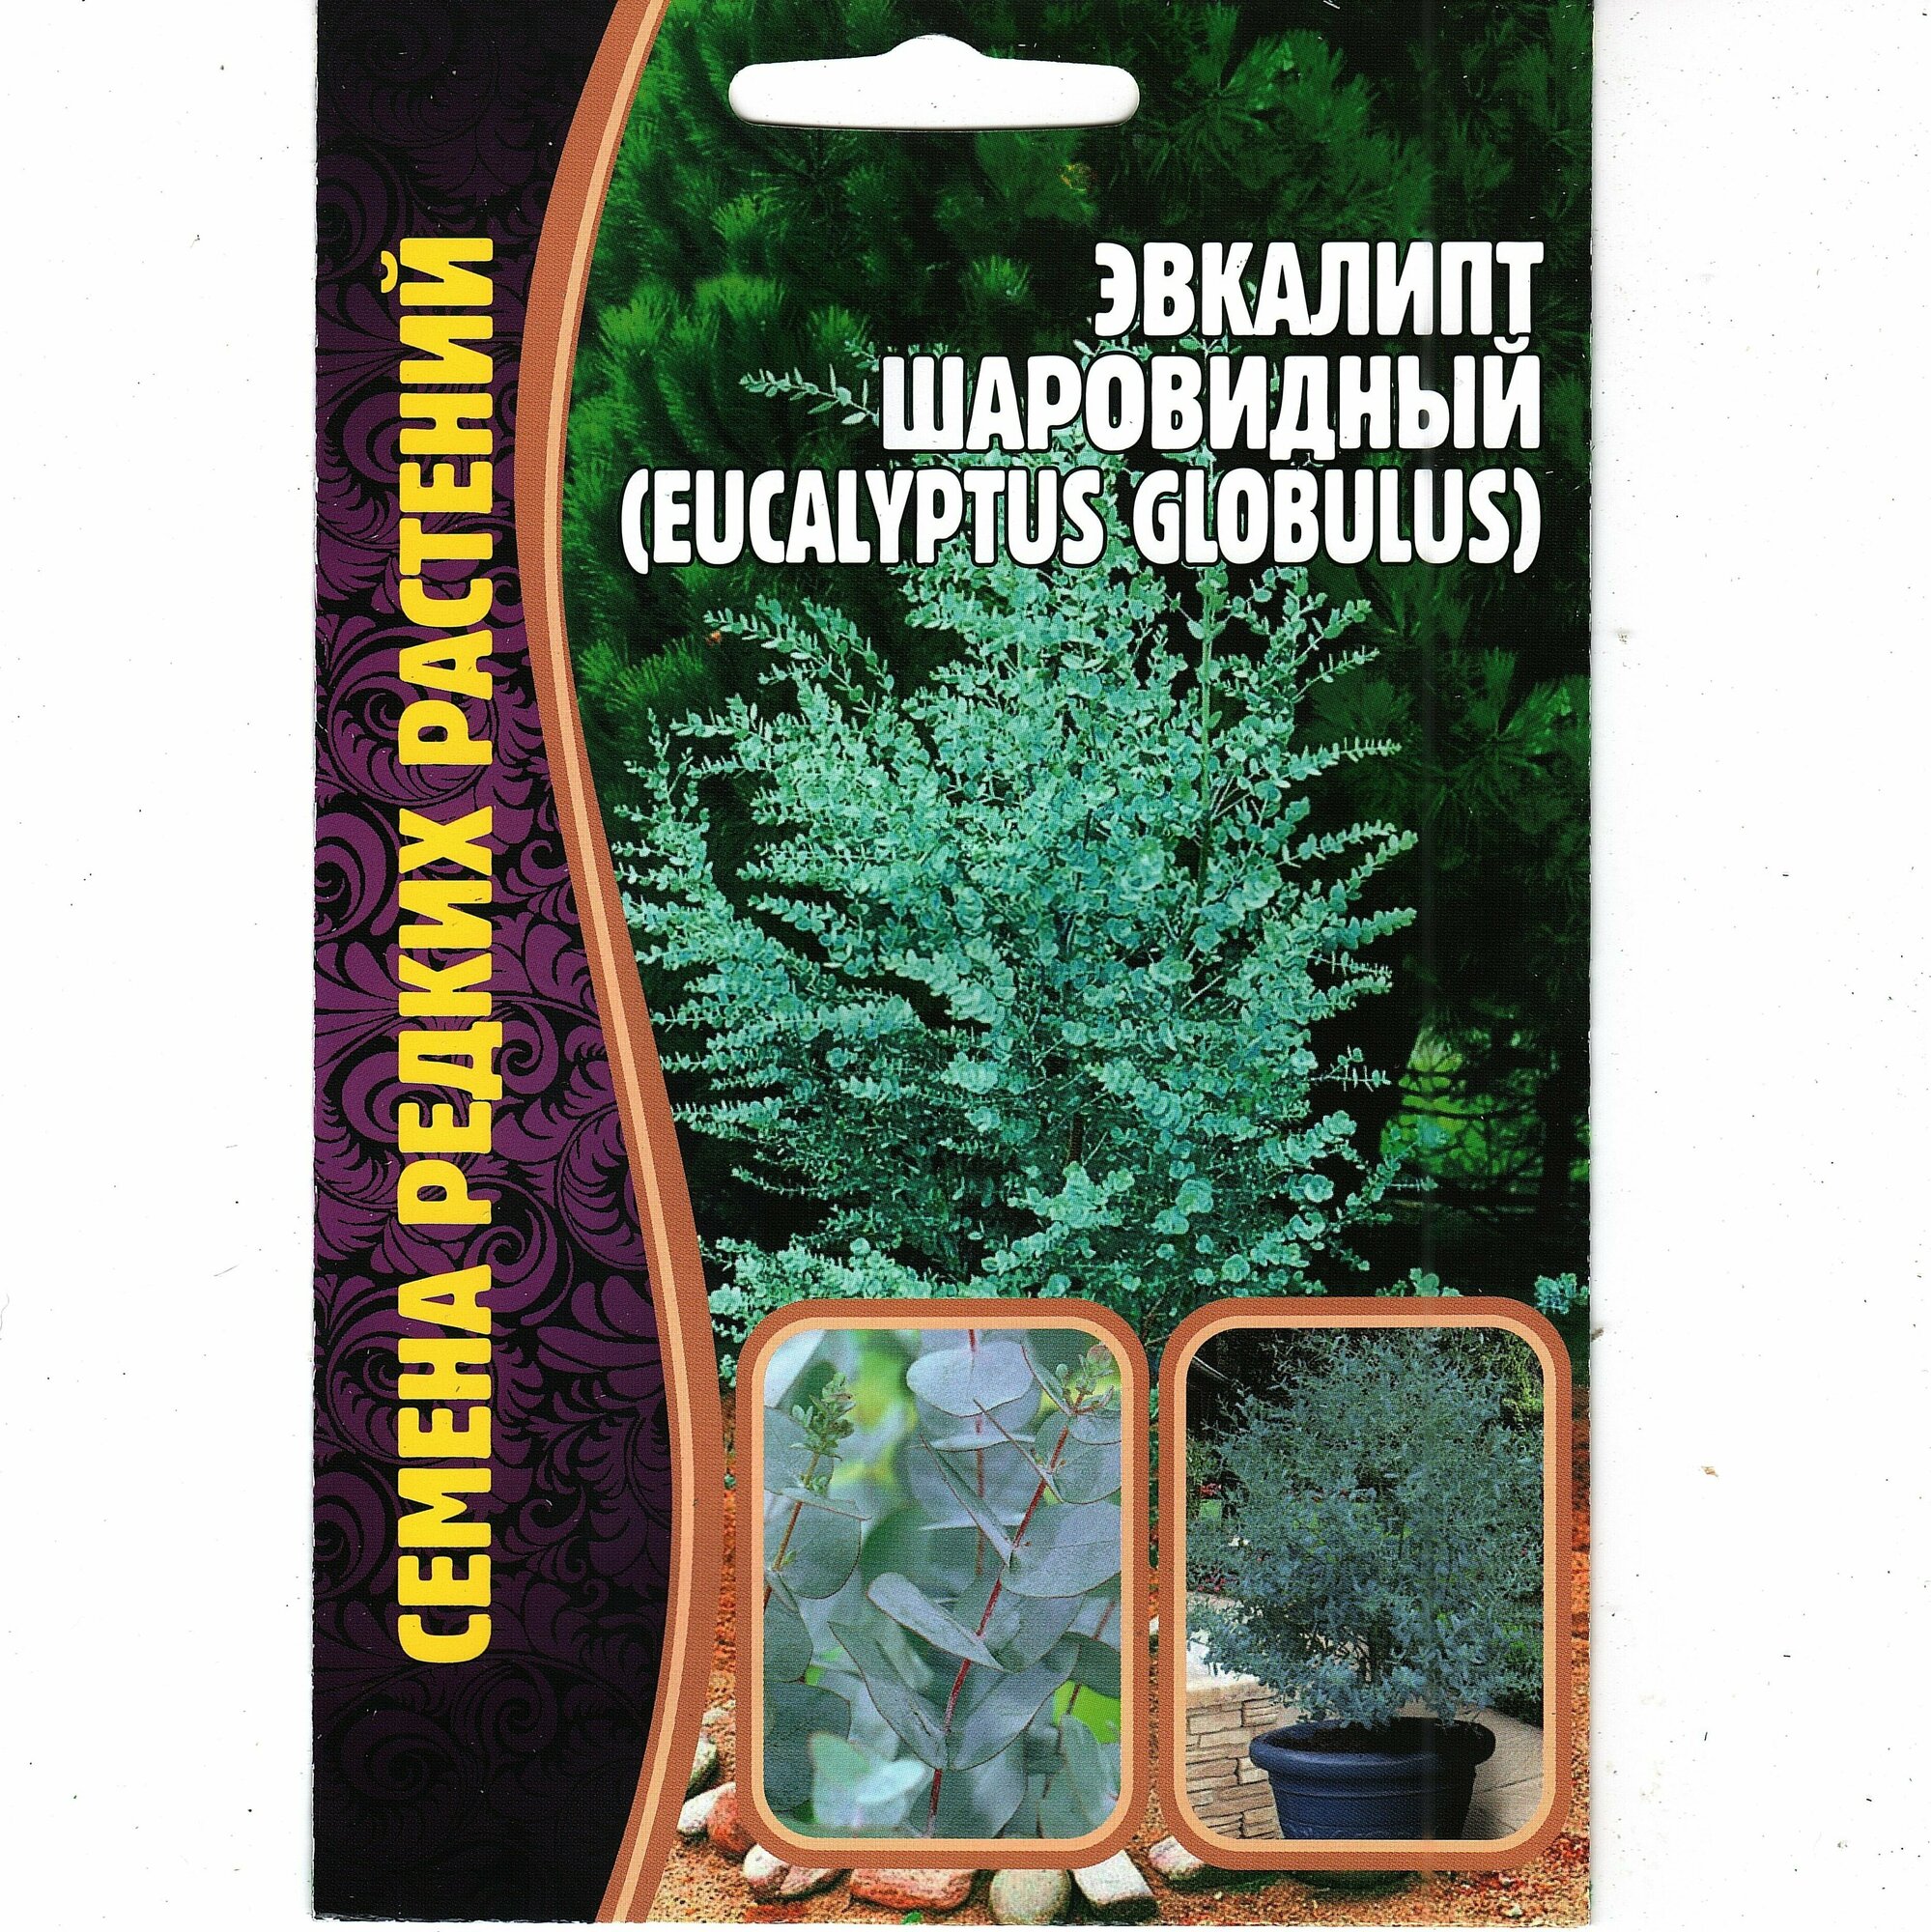 Эвкалипт шаровидный / Eucalyptus globulus комнатный многолетник оздоравливает воздух ( 1 уп: 10 семян )